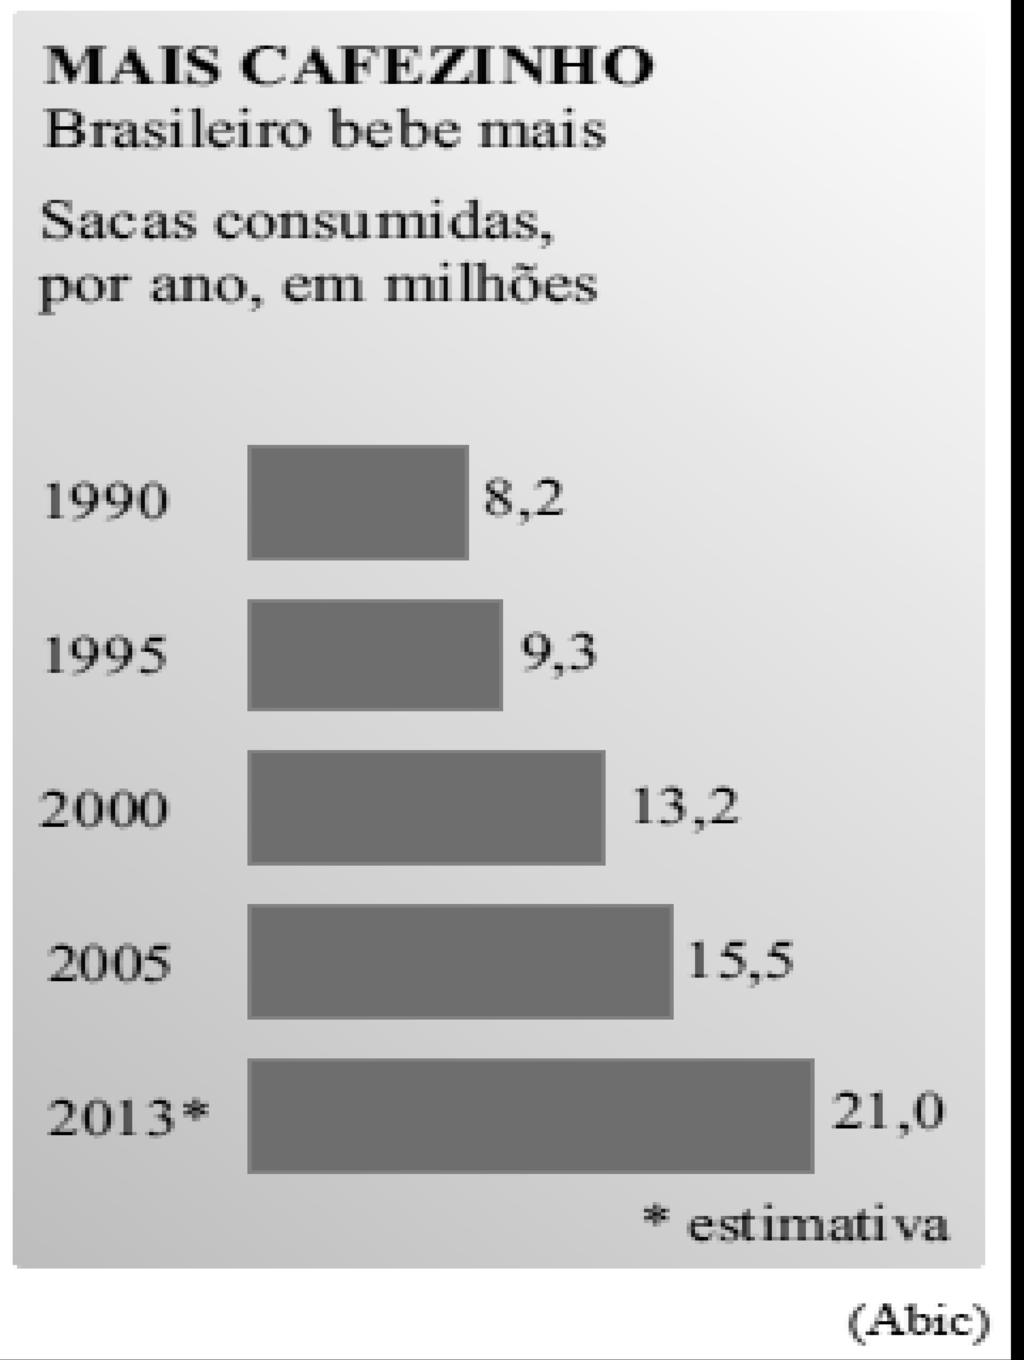 100 - DETRAN-SP 32. Em 7 de fevereiro de 2013, o jornal Folha de S.Paulo publicou a seguinte informação sobre o consumo de café dos brasileiros, por sacas.